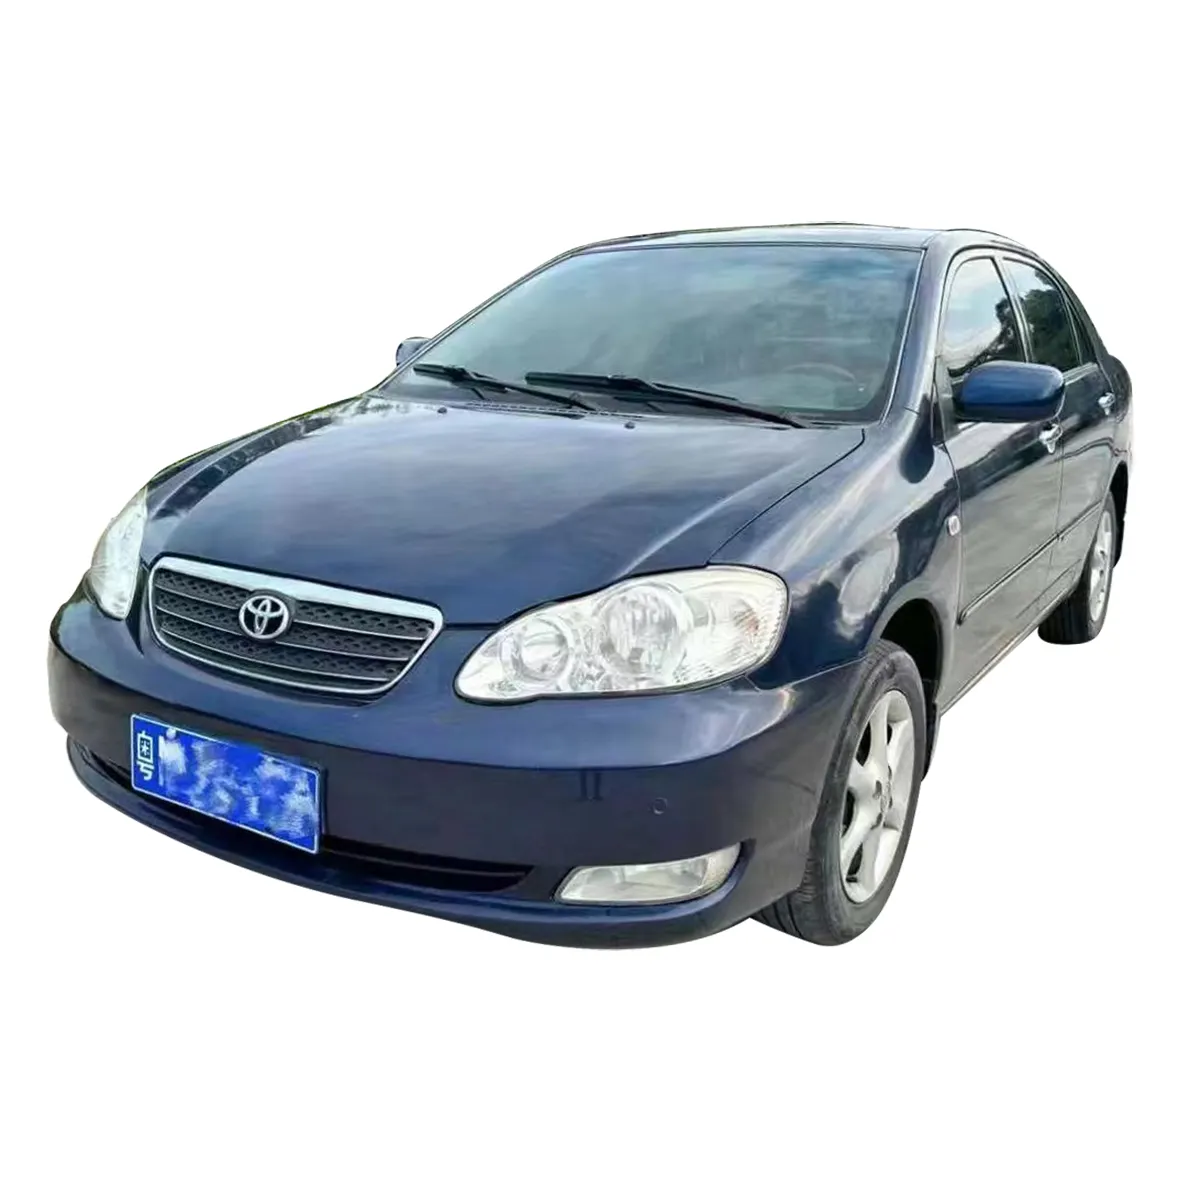 최고의 가격 2004 Toyota Corolla 1.8L 중고 자동차 판매를 위해 중고 자동차 가나에서 차량을 왼쪽